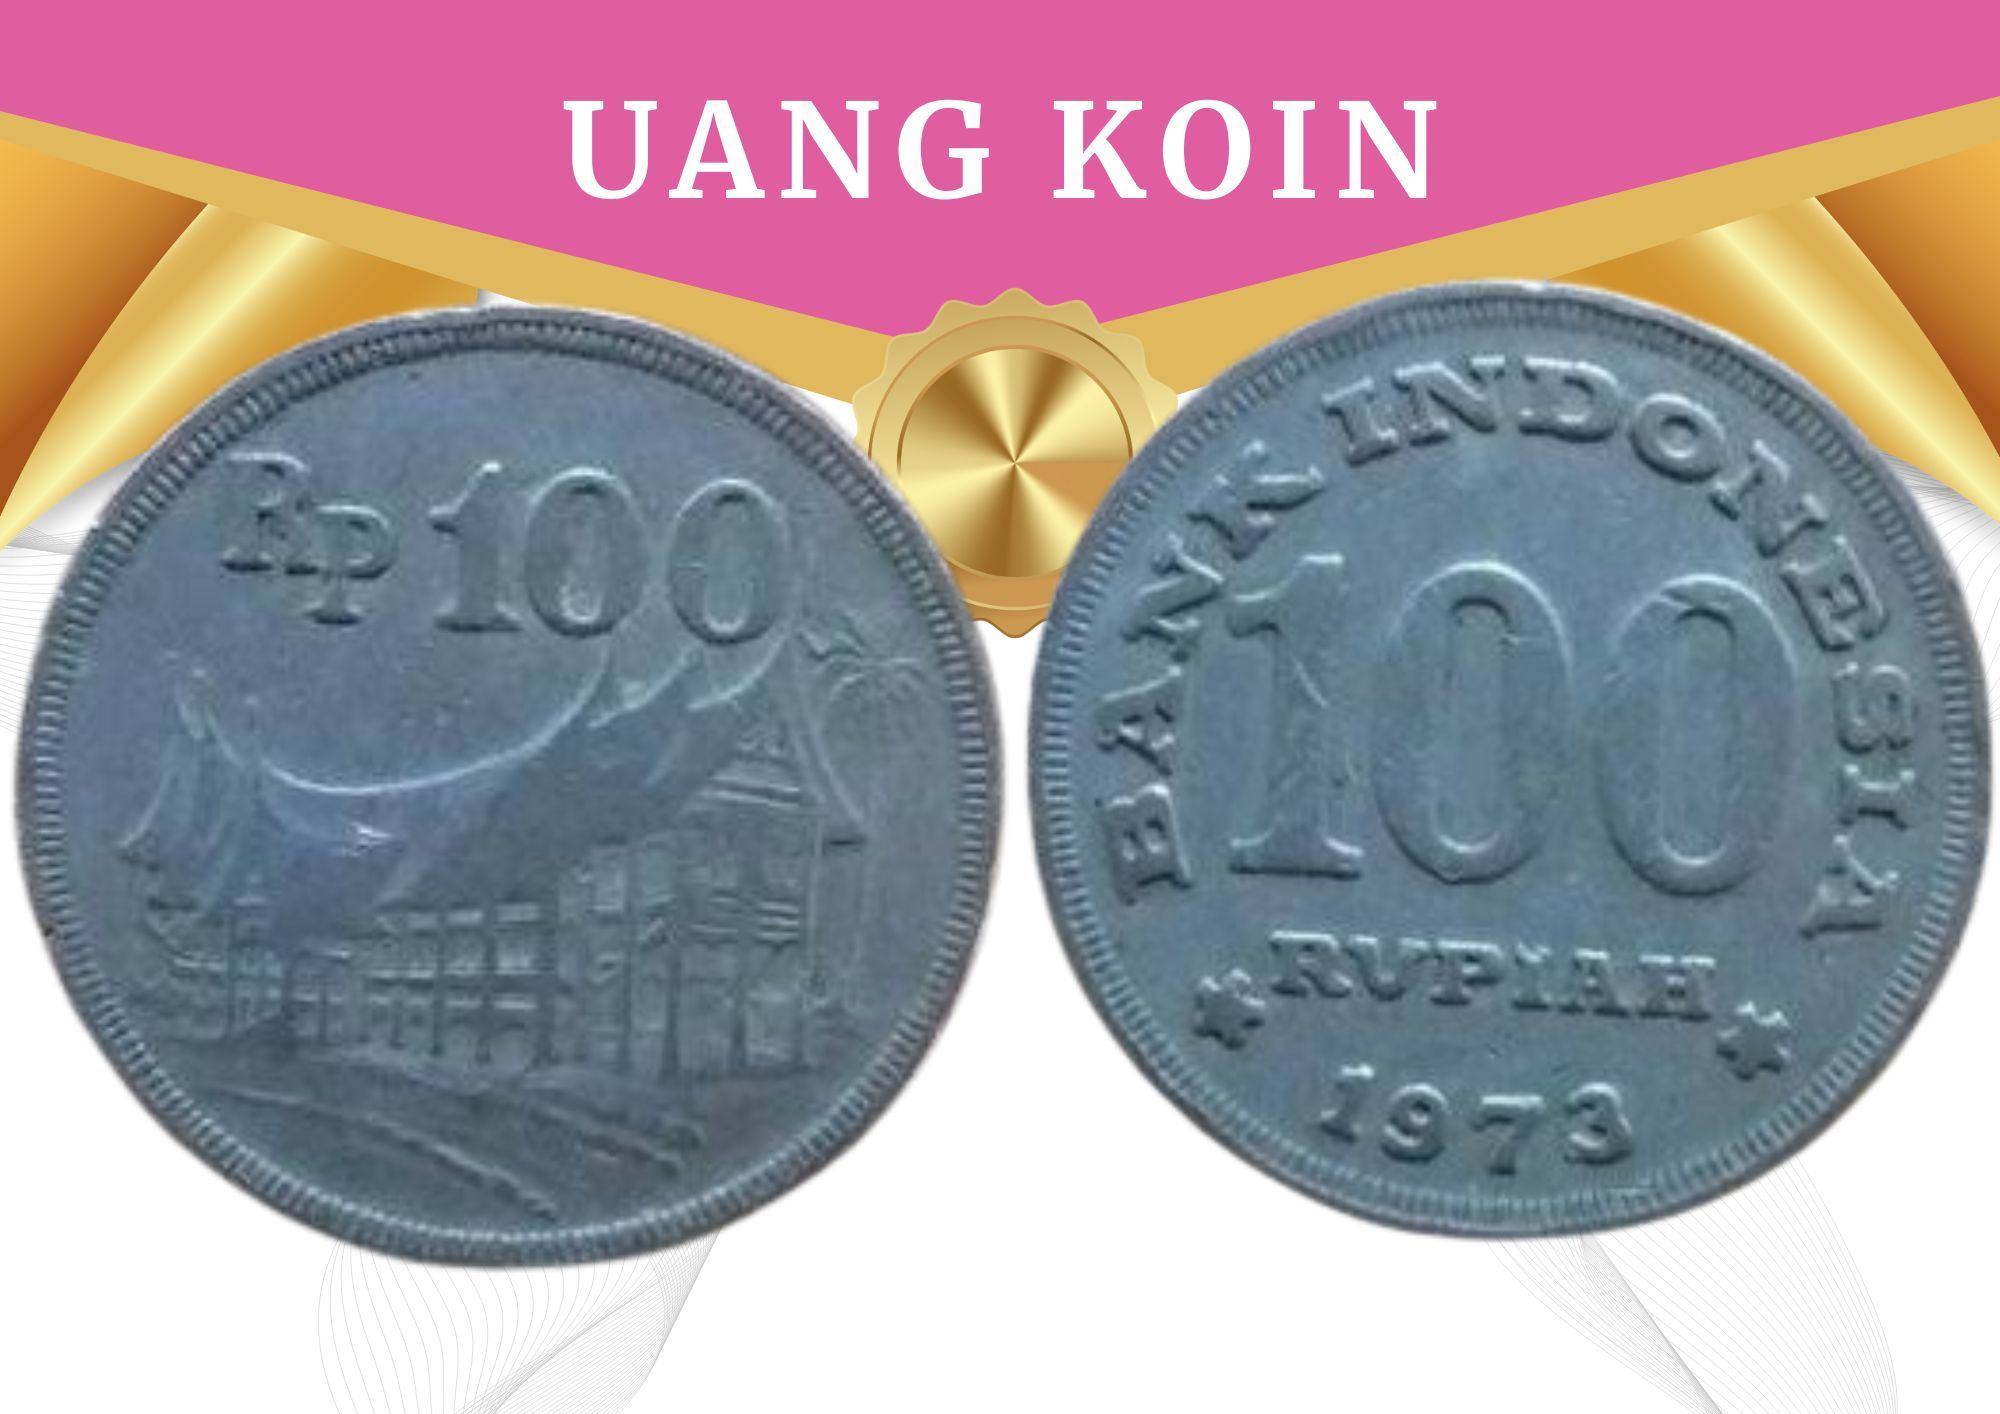 Uang Koin Kuno Rp 100 Tahun Emisi 1973